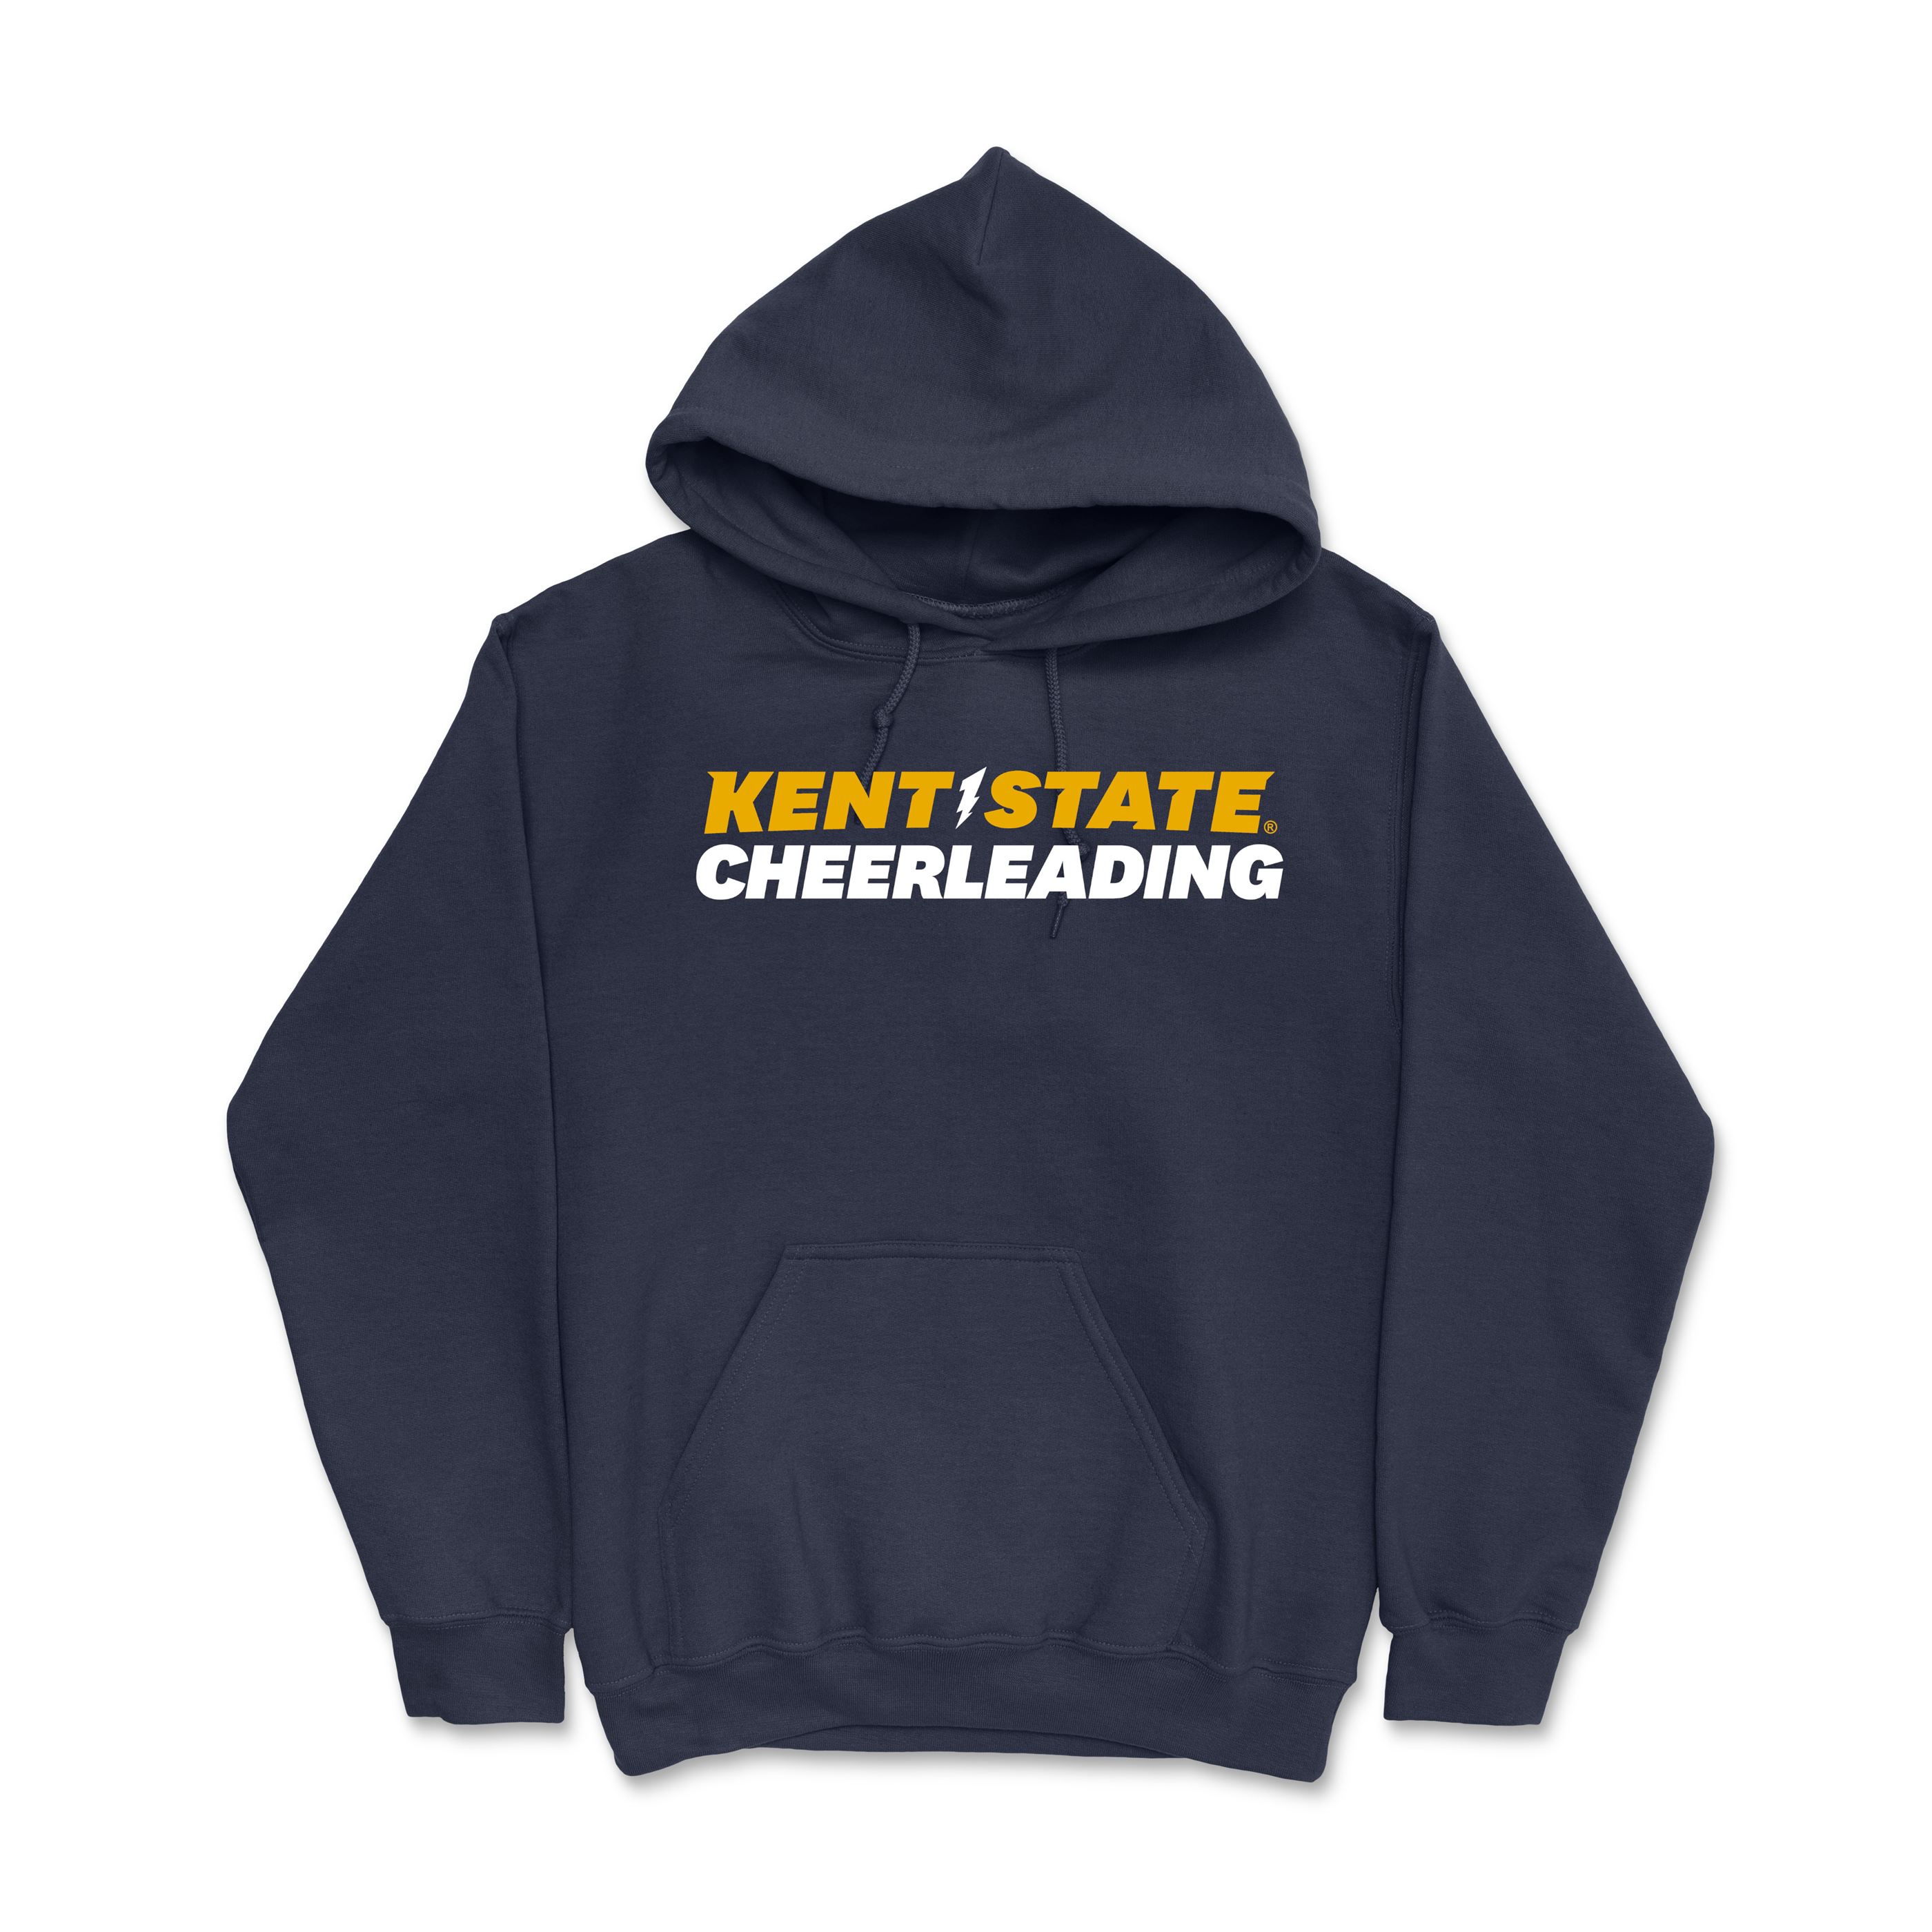 Kent State Navy Cheerleading Hoodie